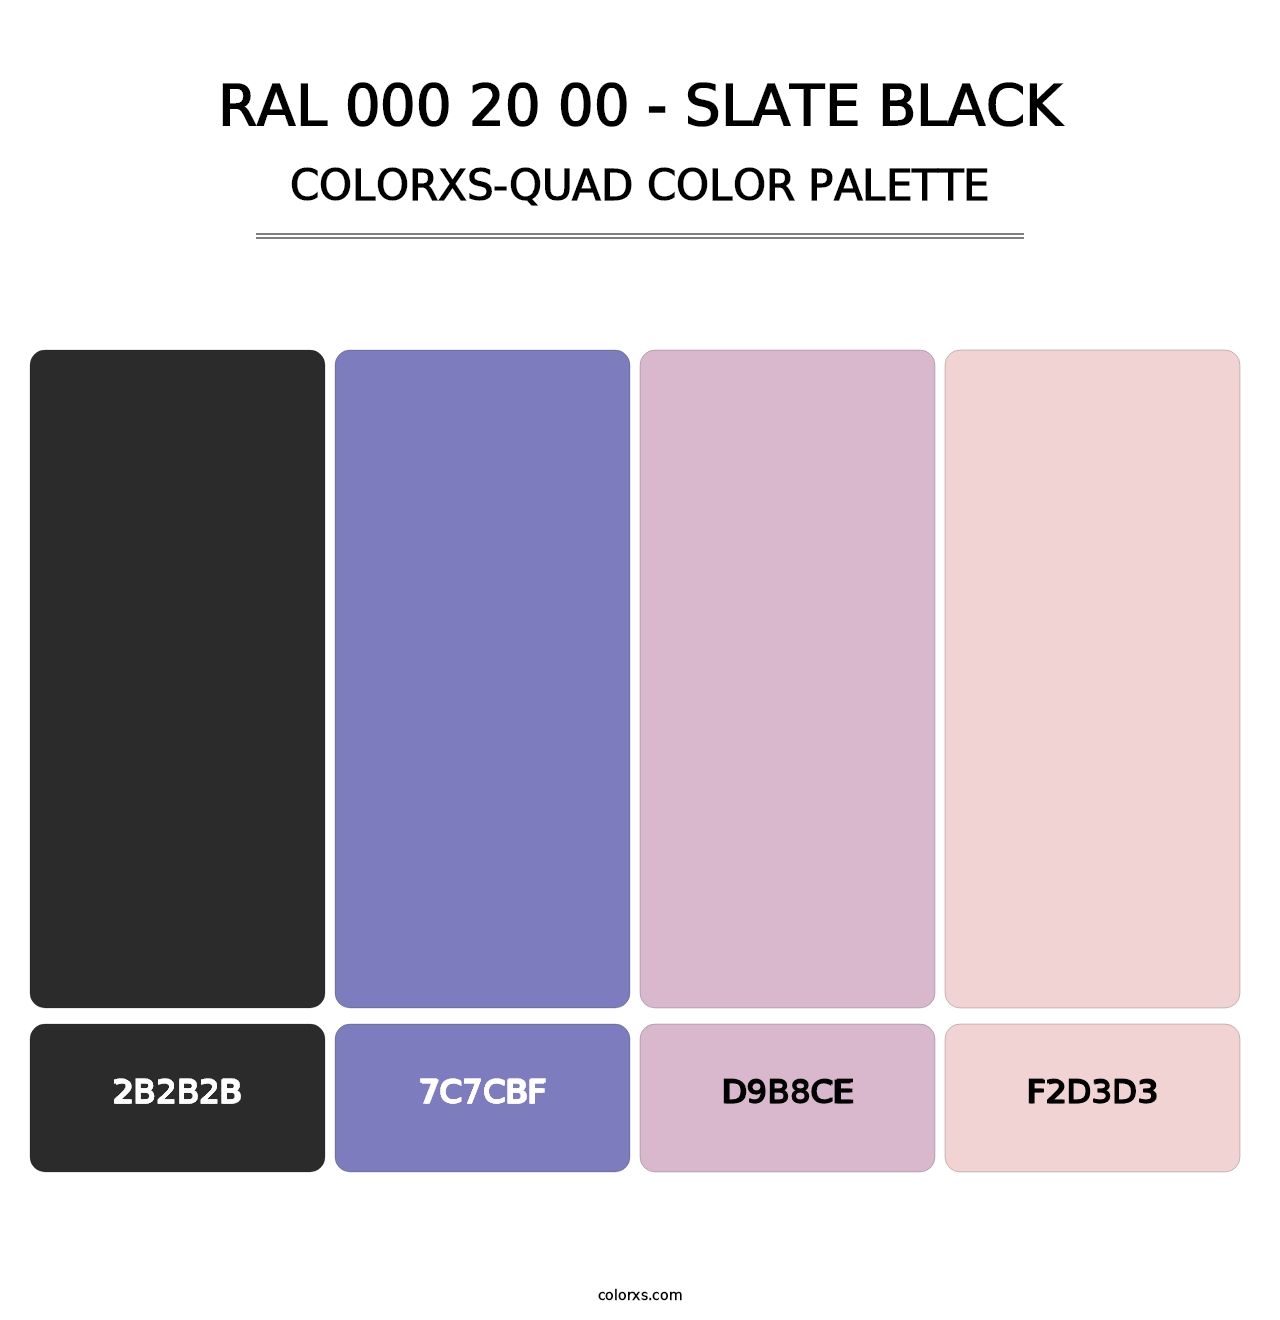 RAL 000 20 00 - Slate Black - Colorxs Quad Palette